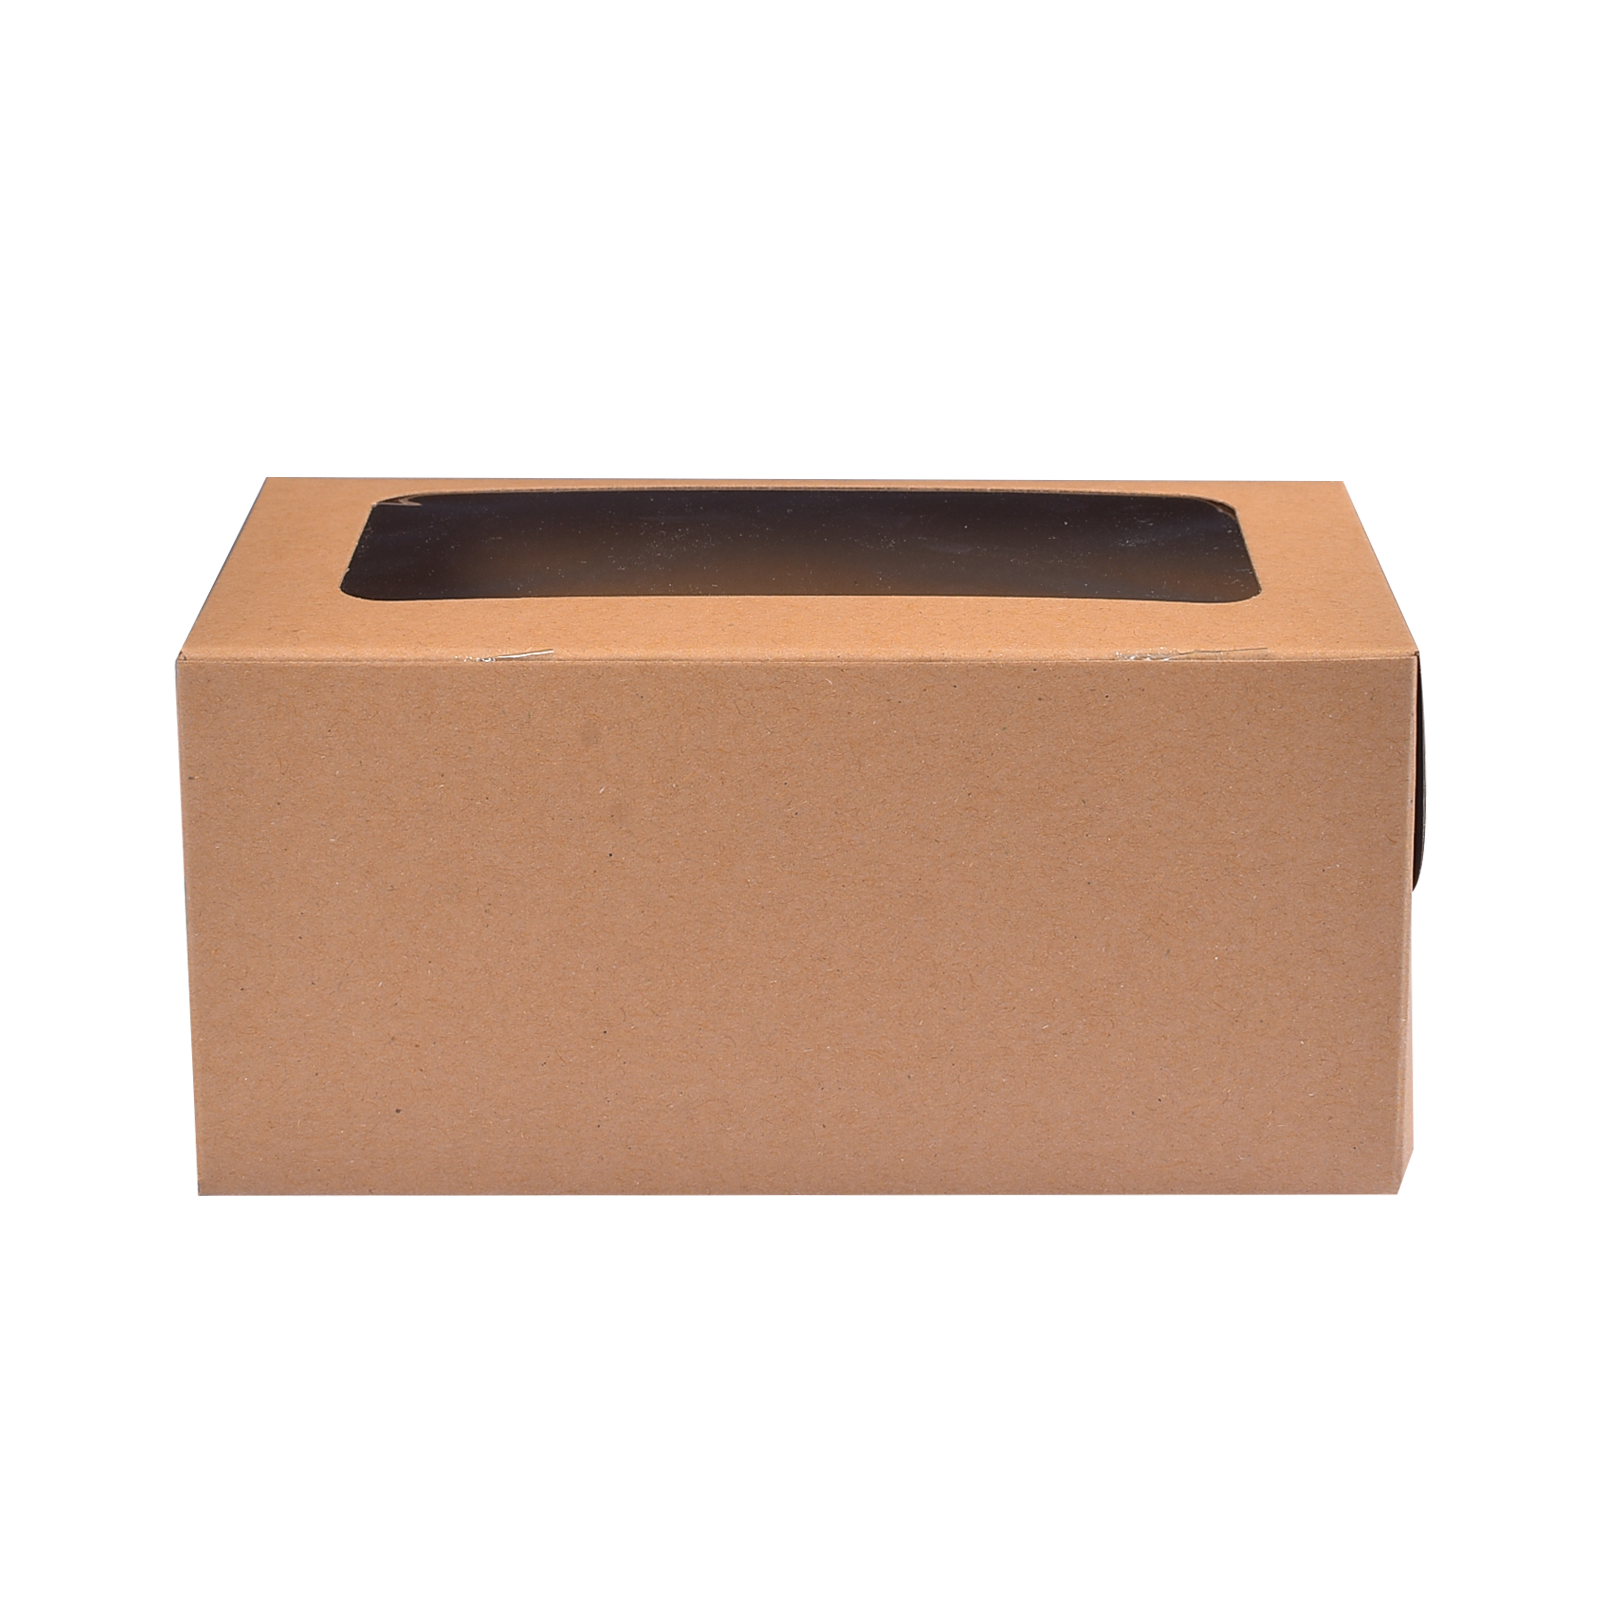 YF07-B2 2L cupcake box(brown).png